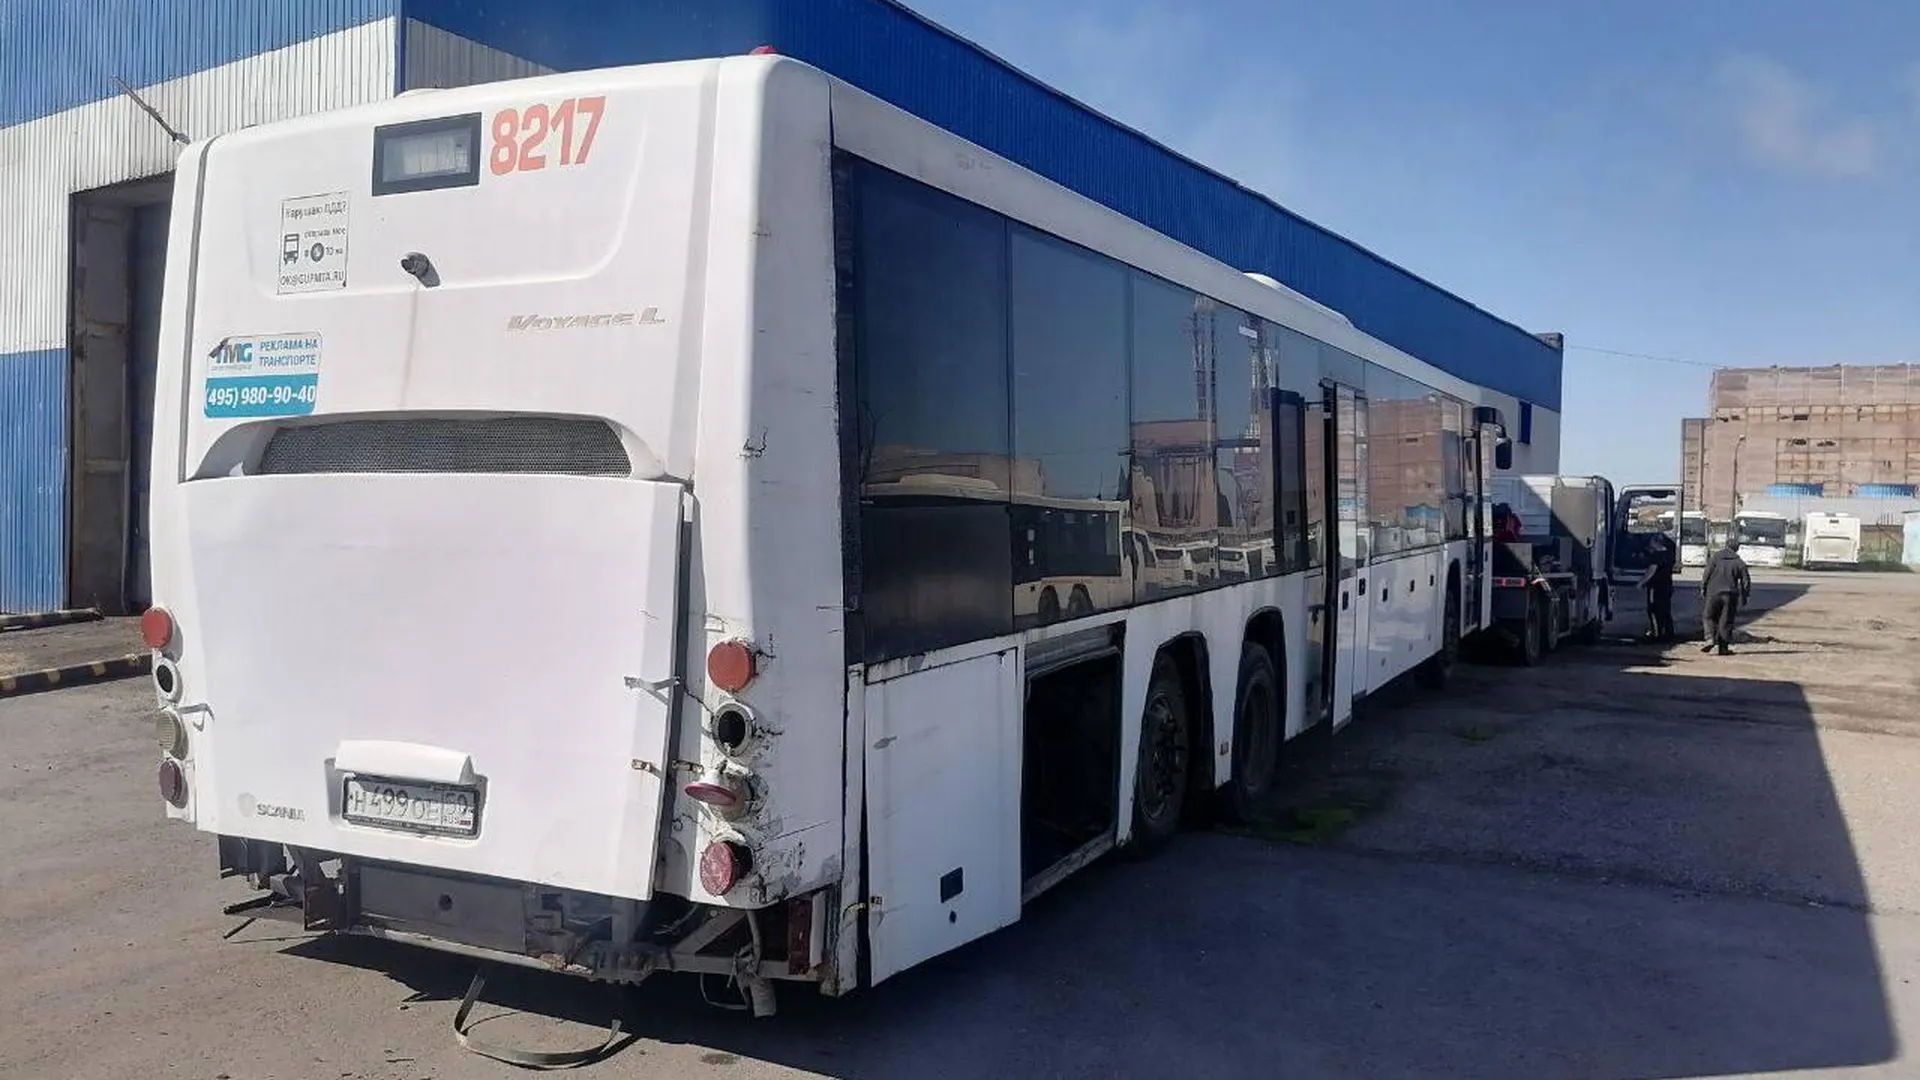 Свыше пятисот автобусов компании Мострансавто сдали на утилизацию в Подмосковье